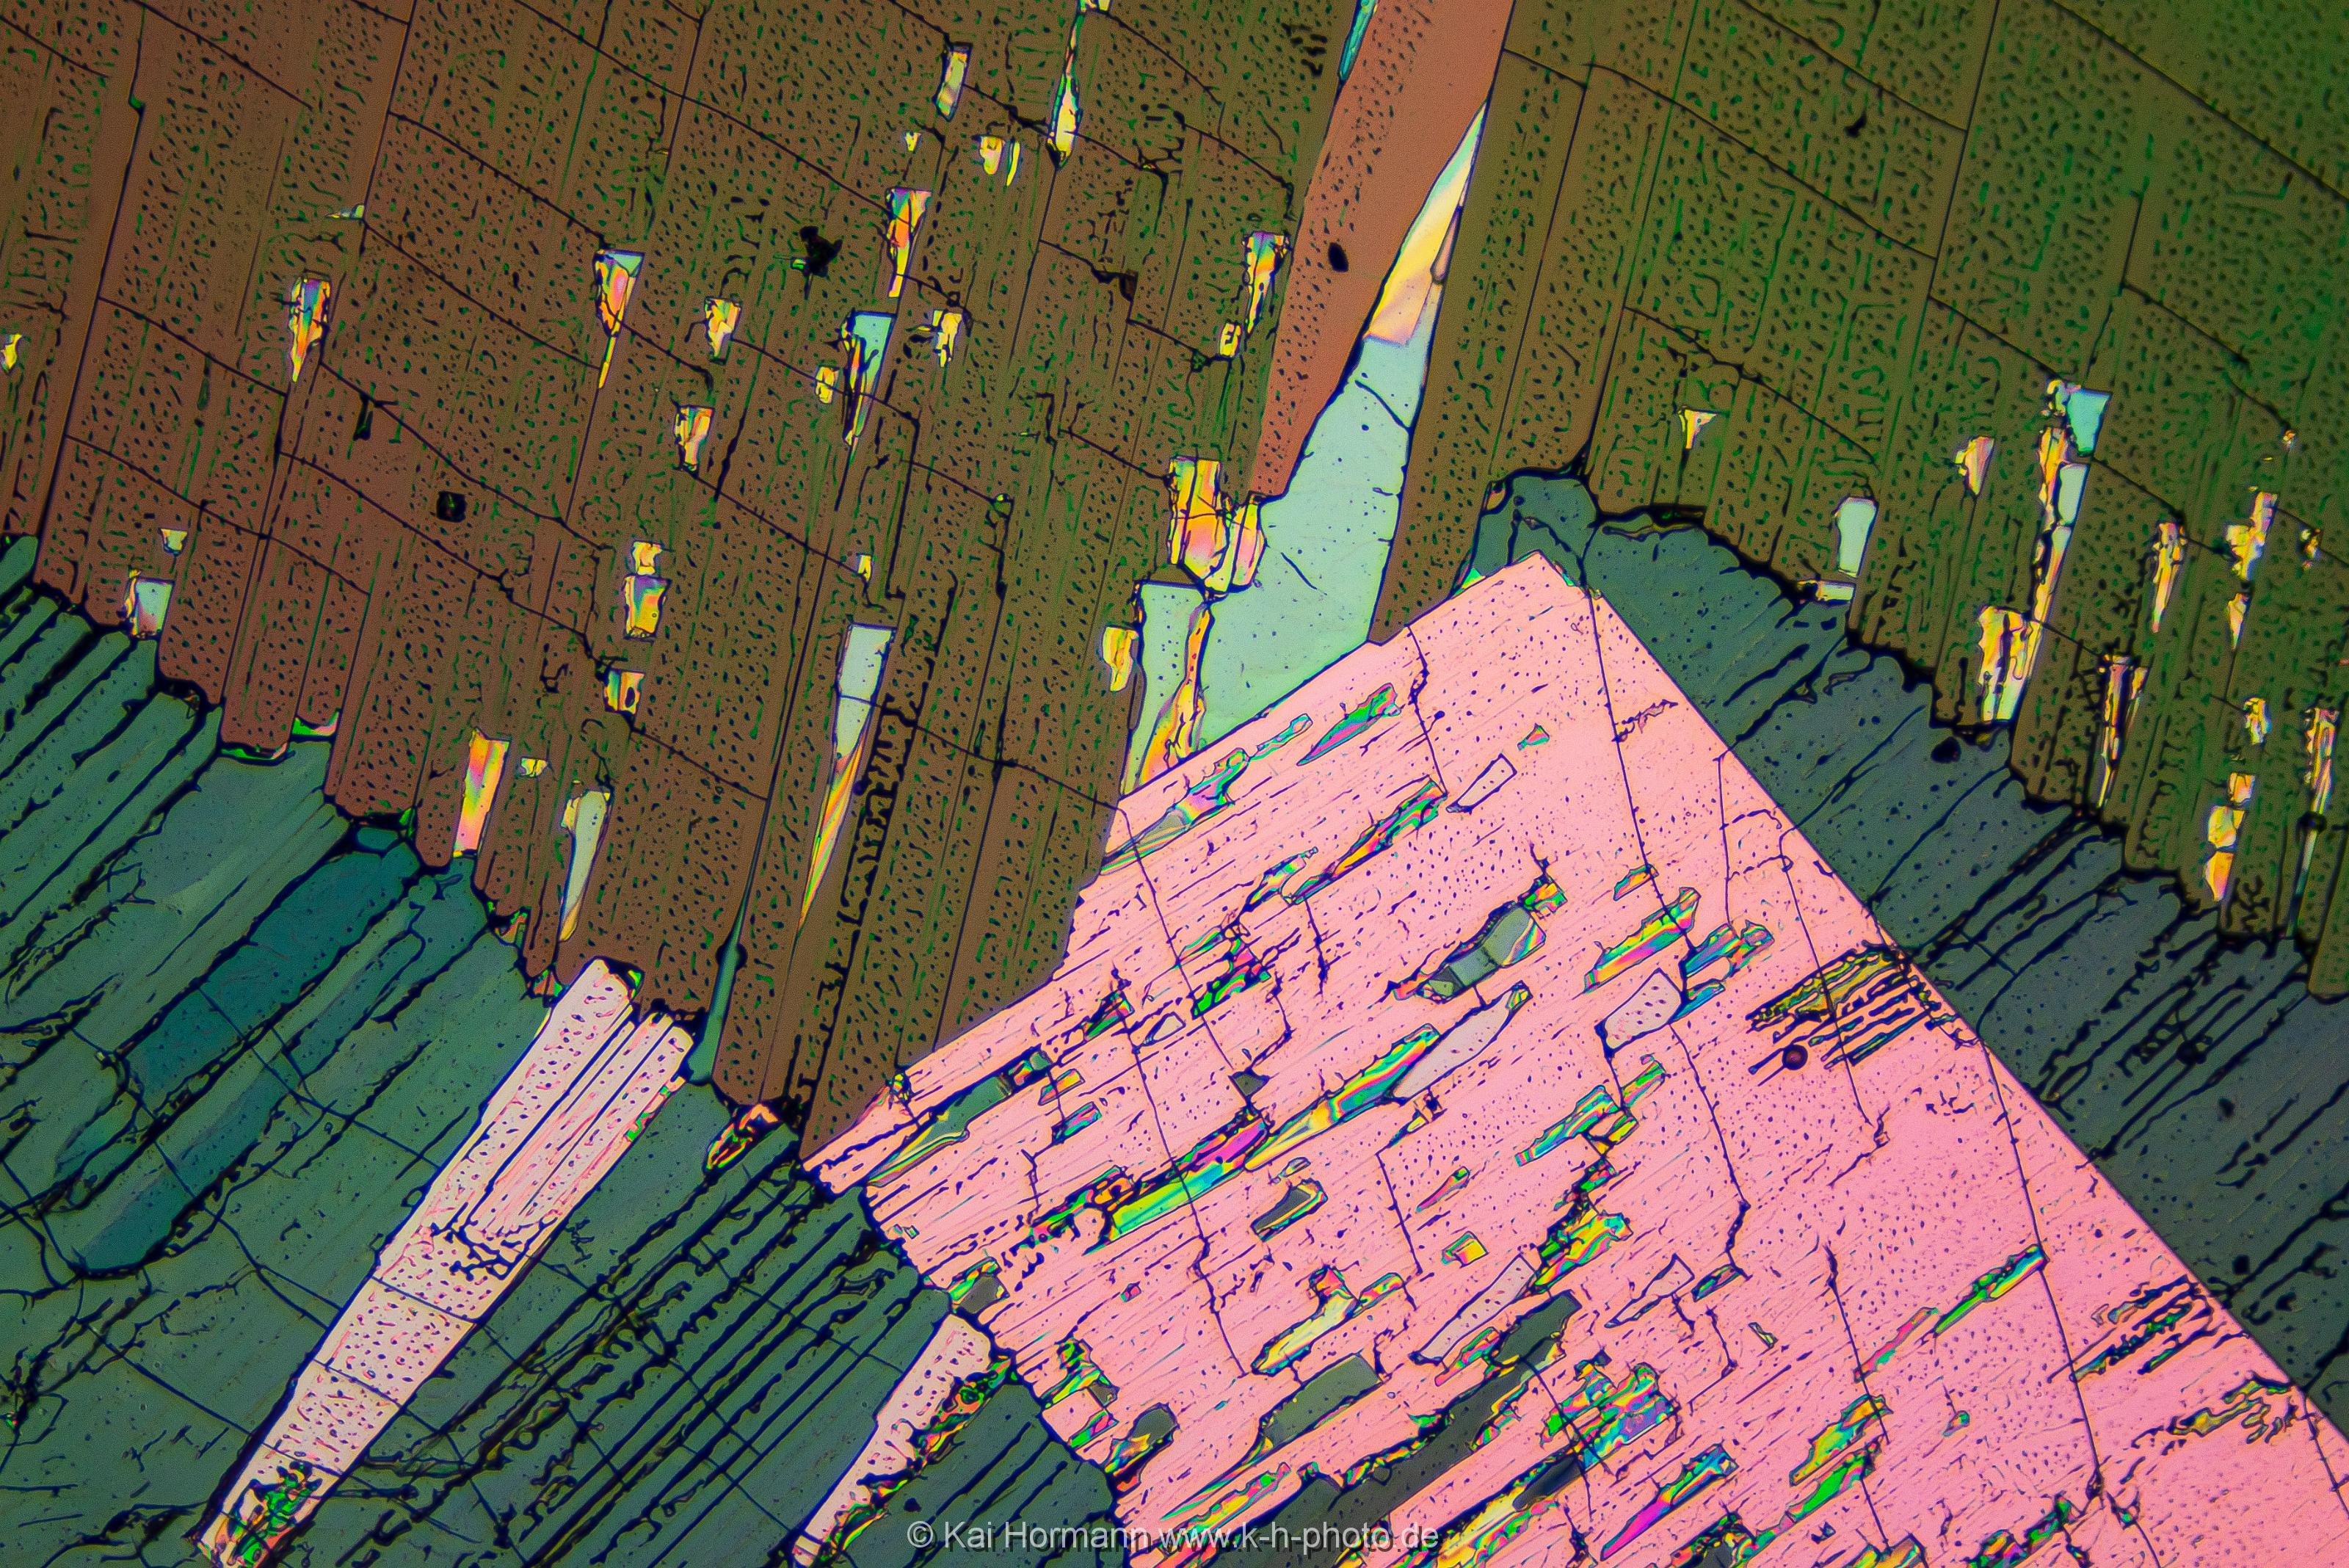 Schwefel Mikrokristalle im polarisierten Licht.